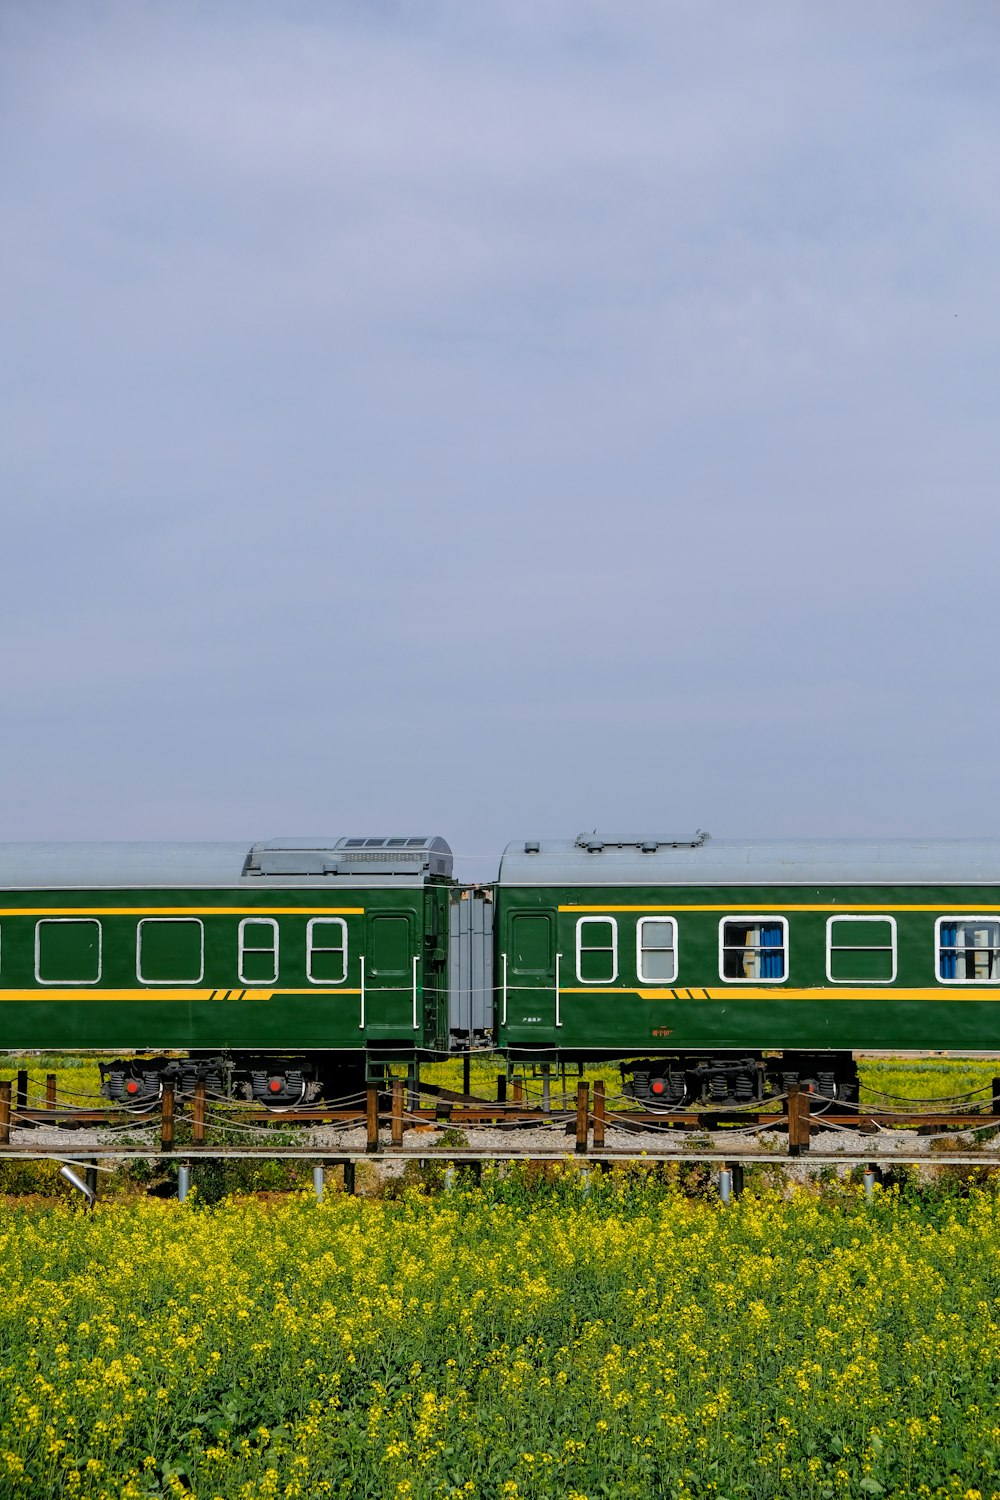 a green train traveling through a lush green field